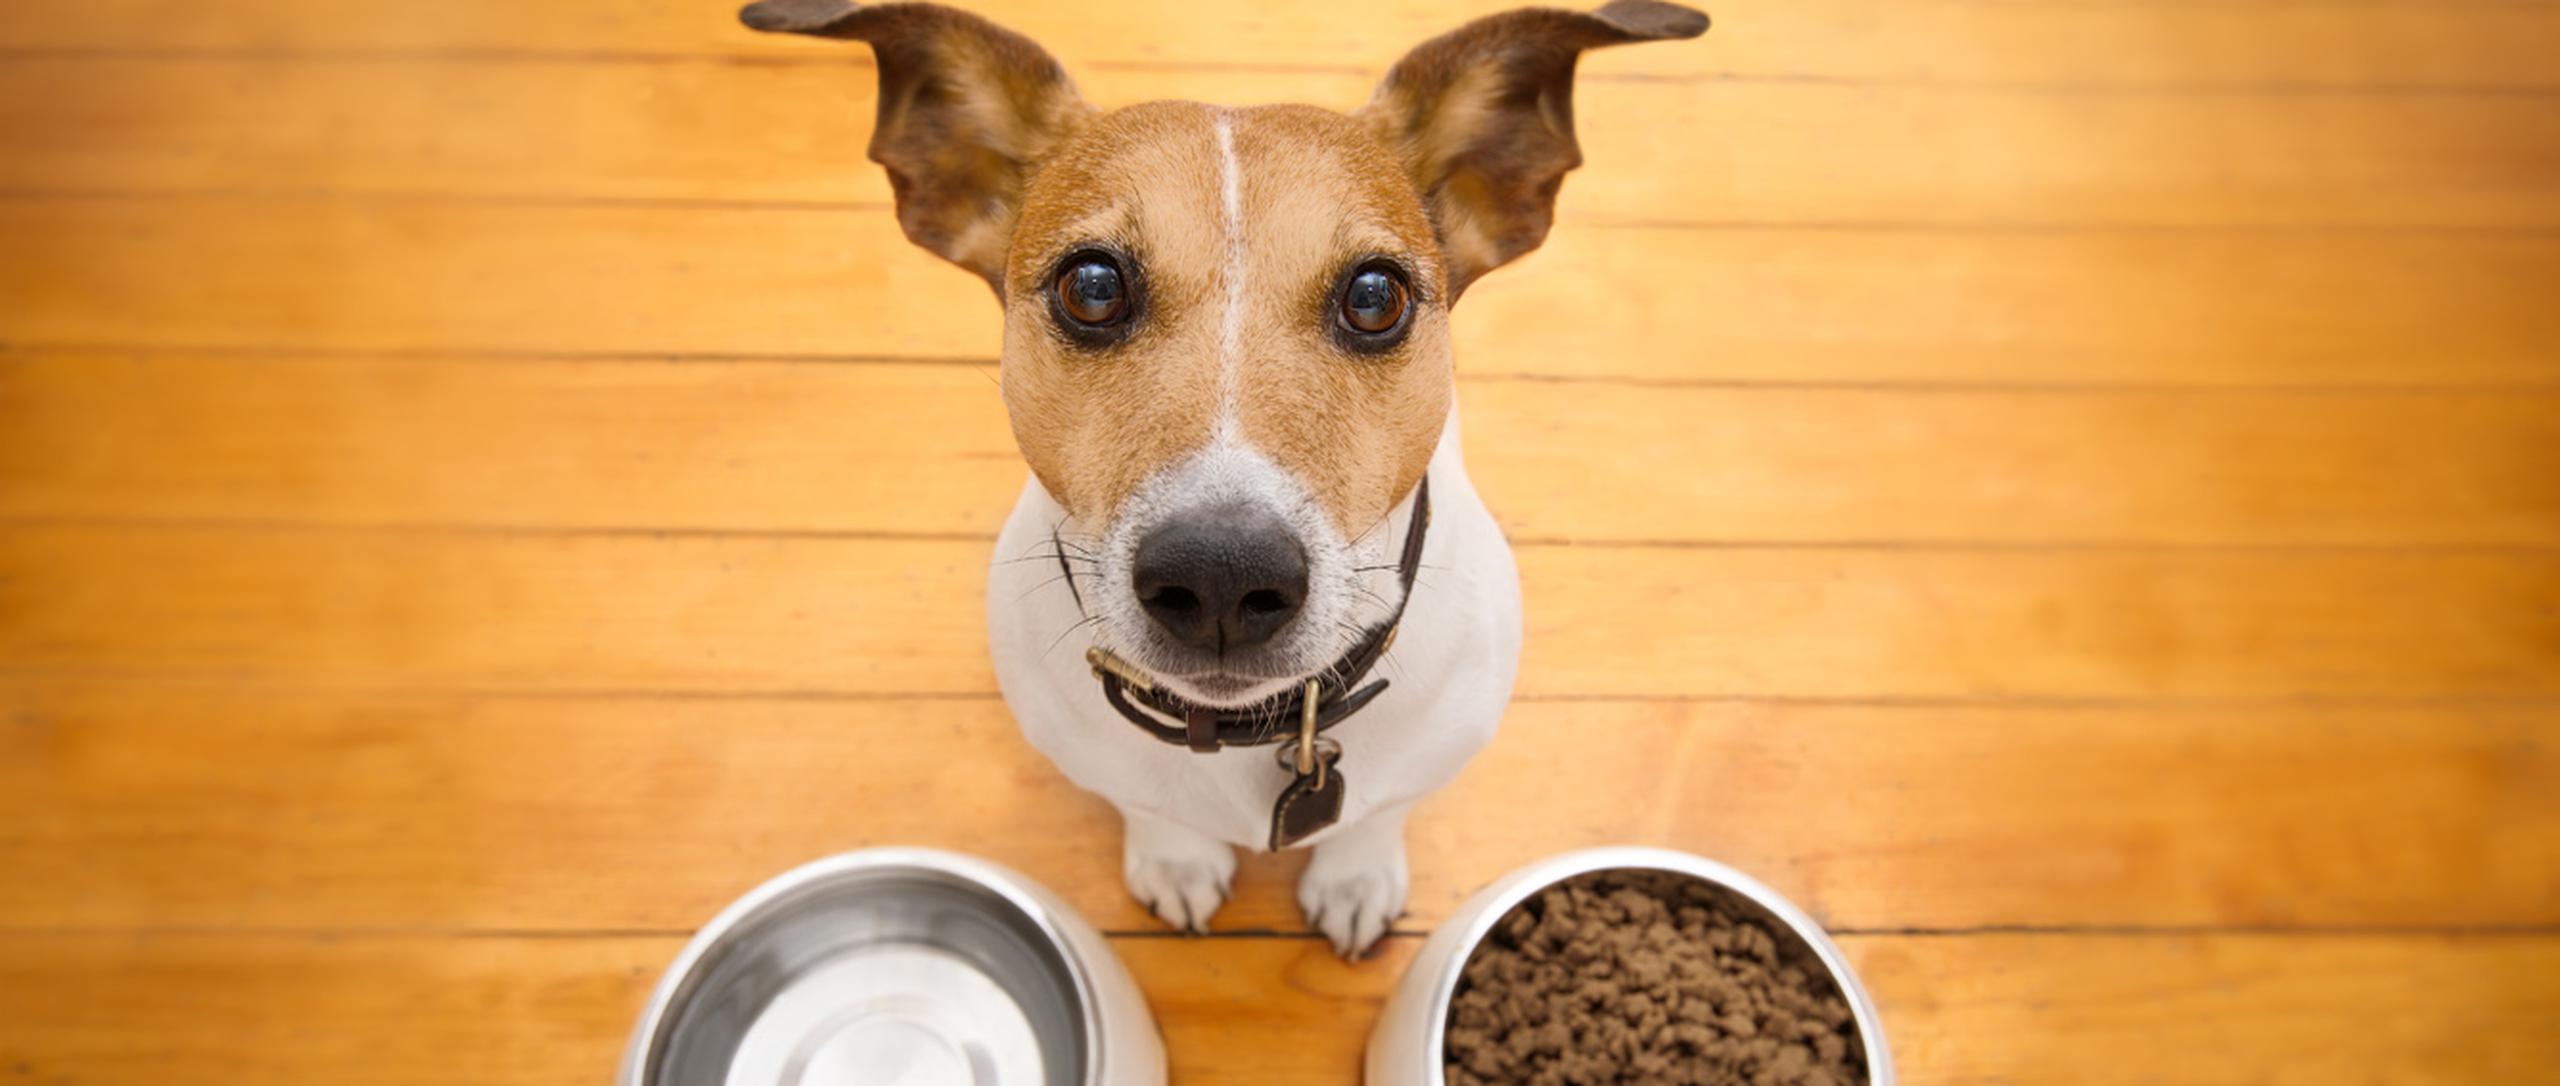 El mercado de los alimentos para los animales, especialmente para perros y gatos, tiene una oferta amplia de acuerdo con la edad y la raza. (Shutterstock)